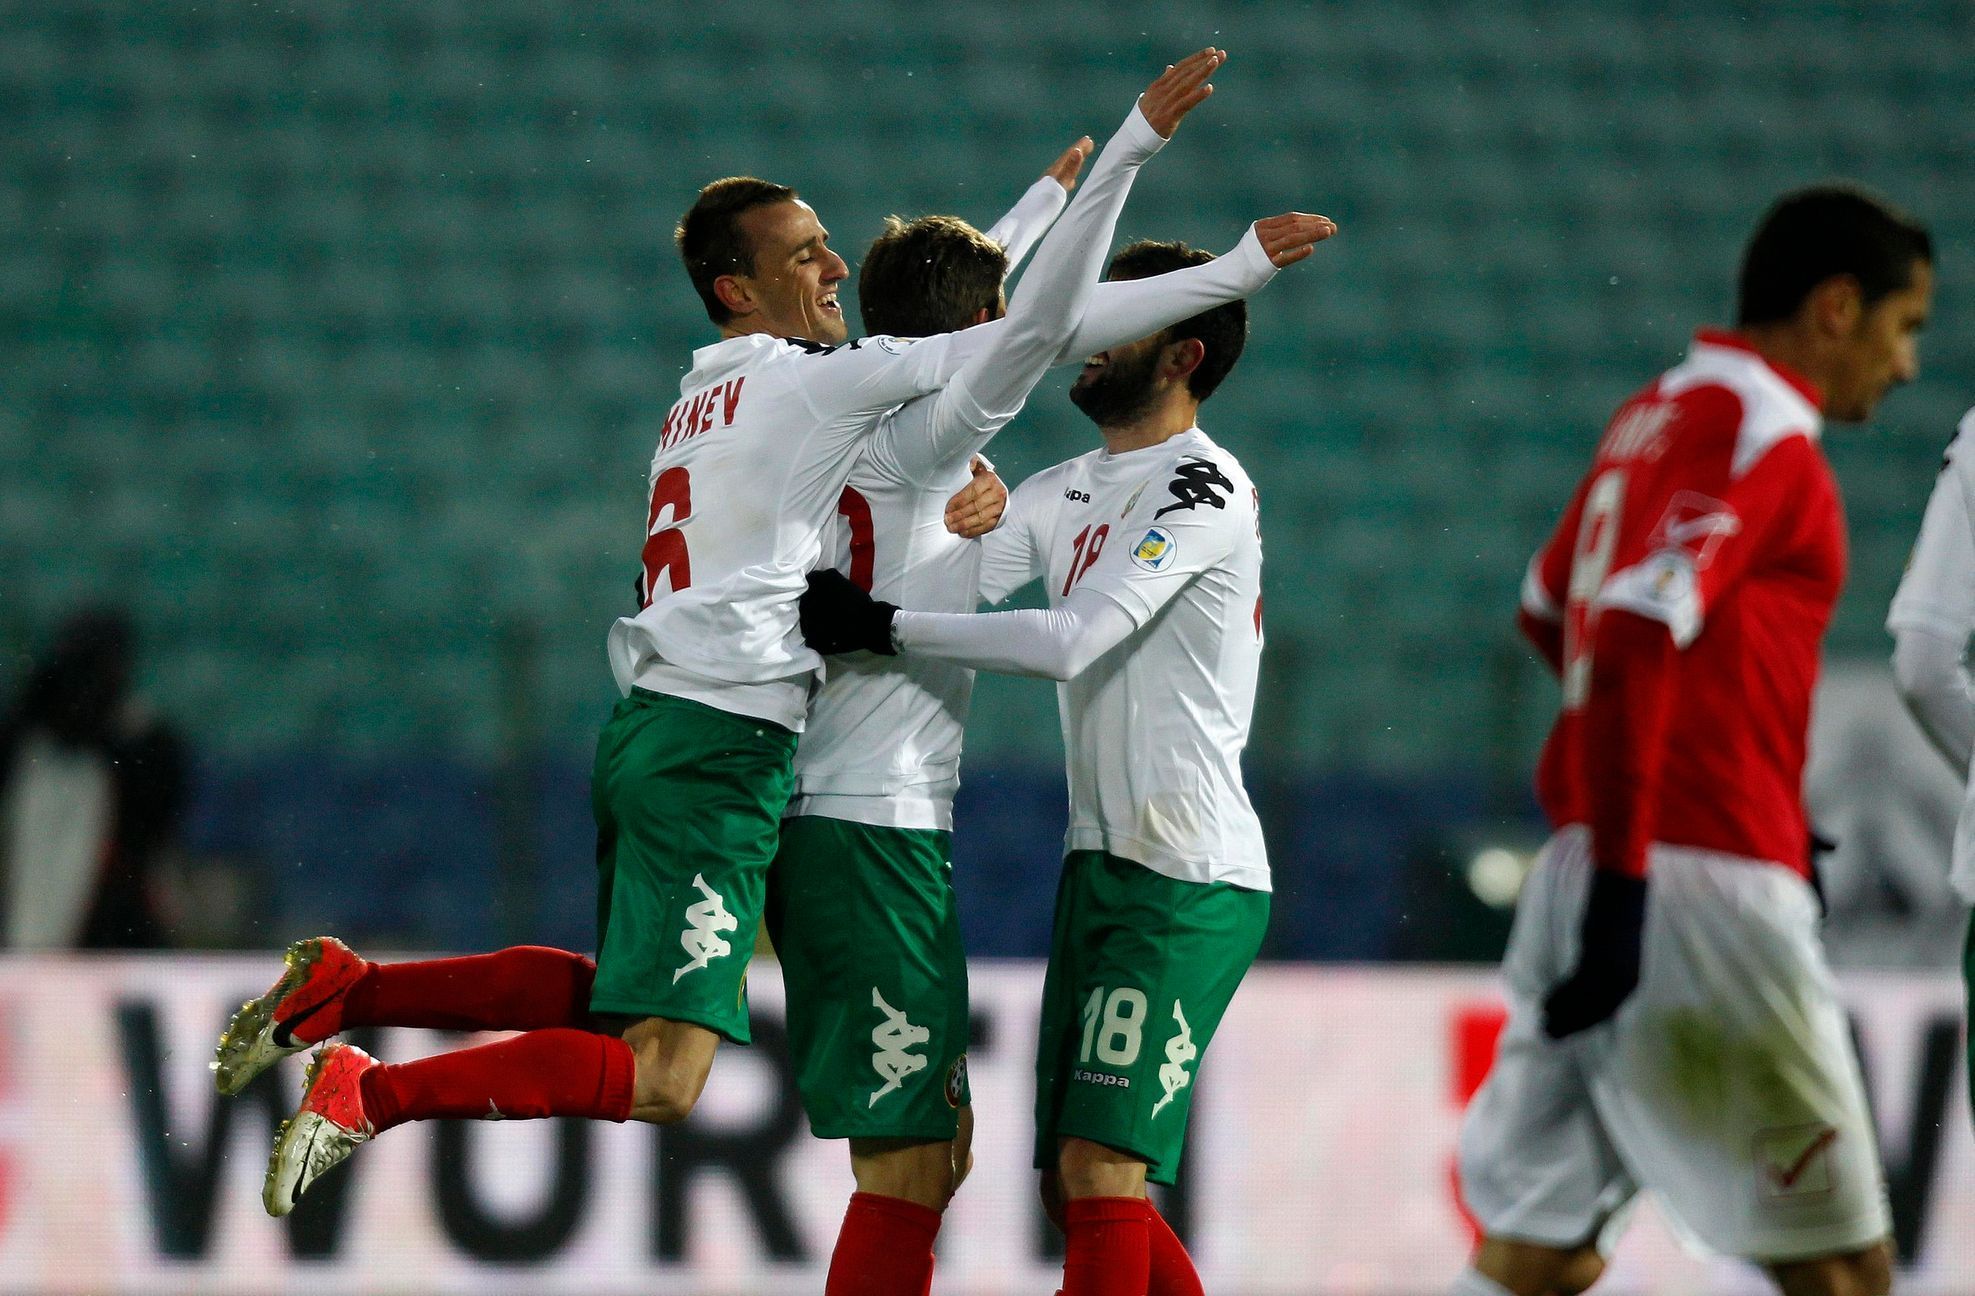 Bulharský fotbalista Alexander Tonev slaví se spoluhráči branku do sítě Malty